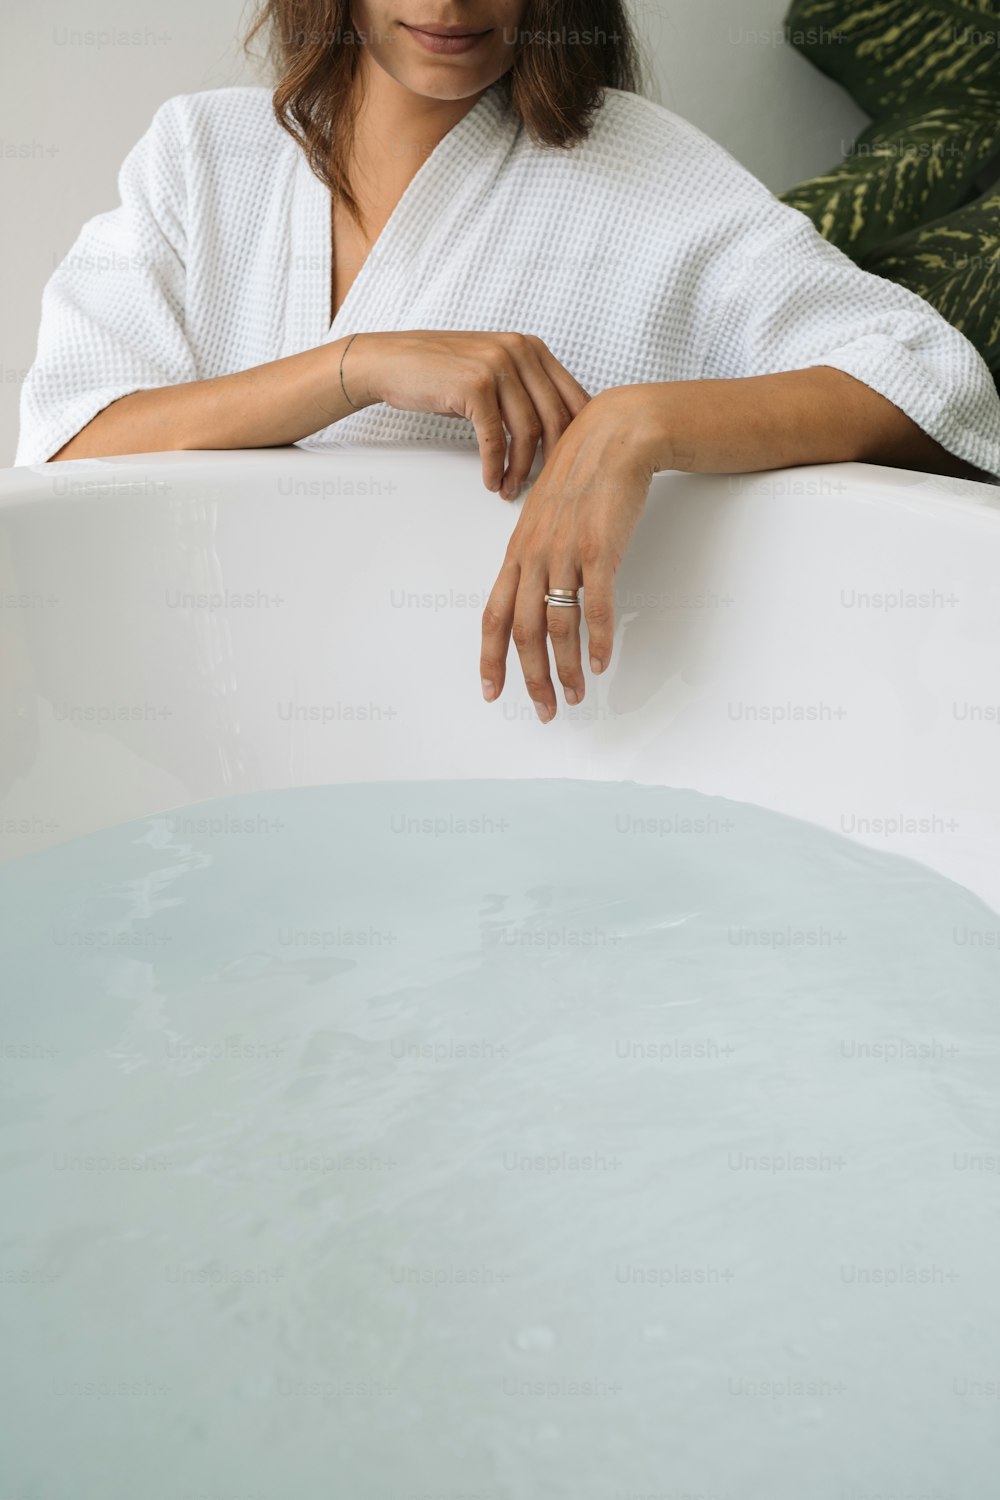 Una donna in accappatoio appoggiata su una vasca da bagno